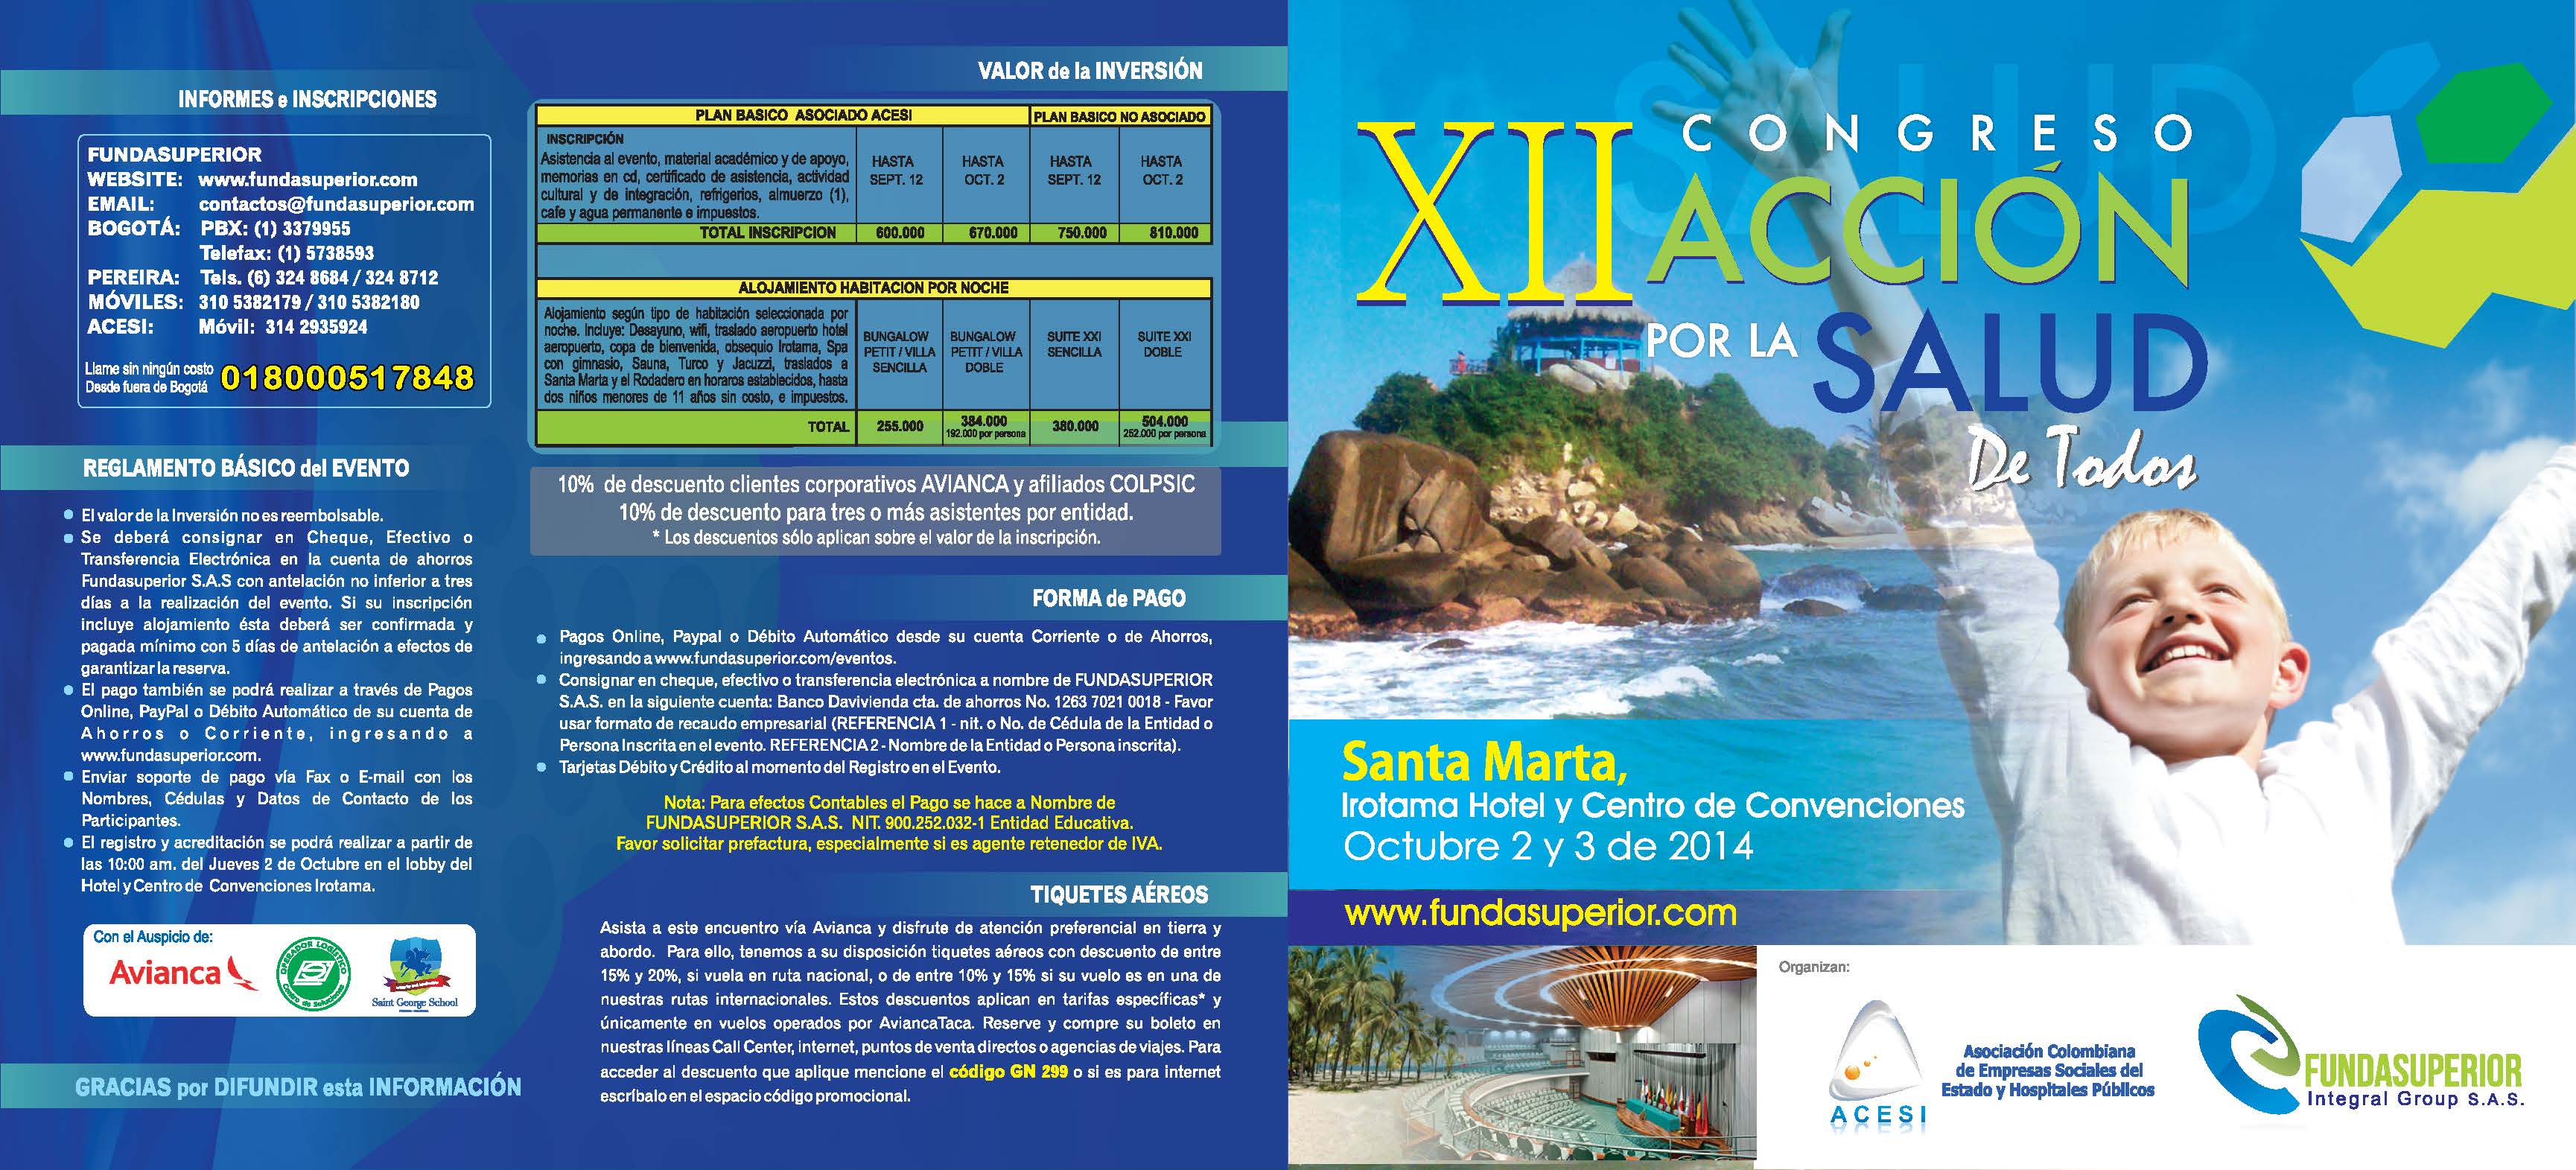 Santa Marta será la sede del Congreso Nacional de ACESI 2014